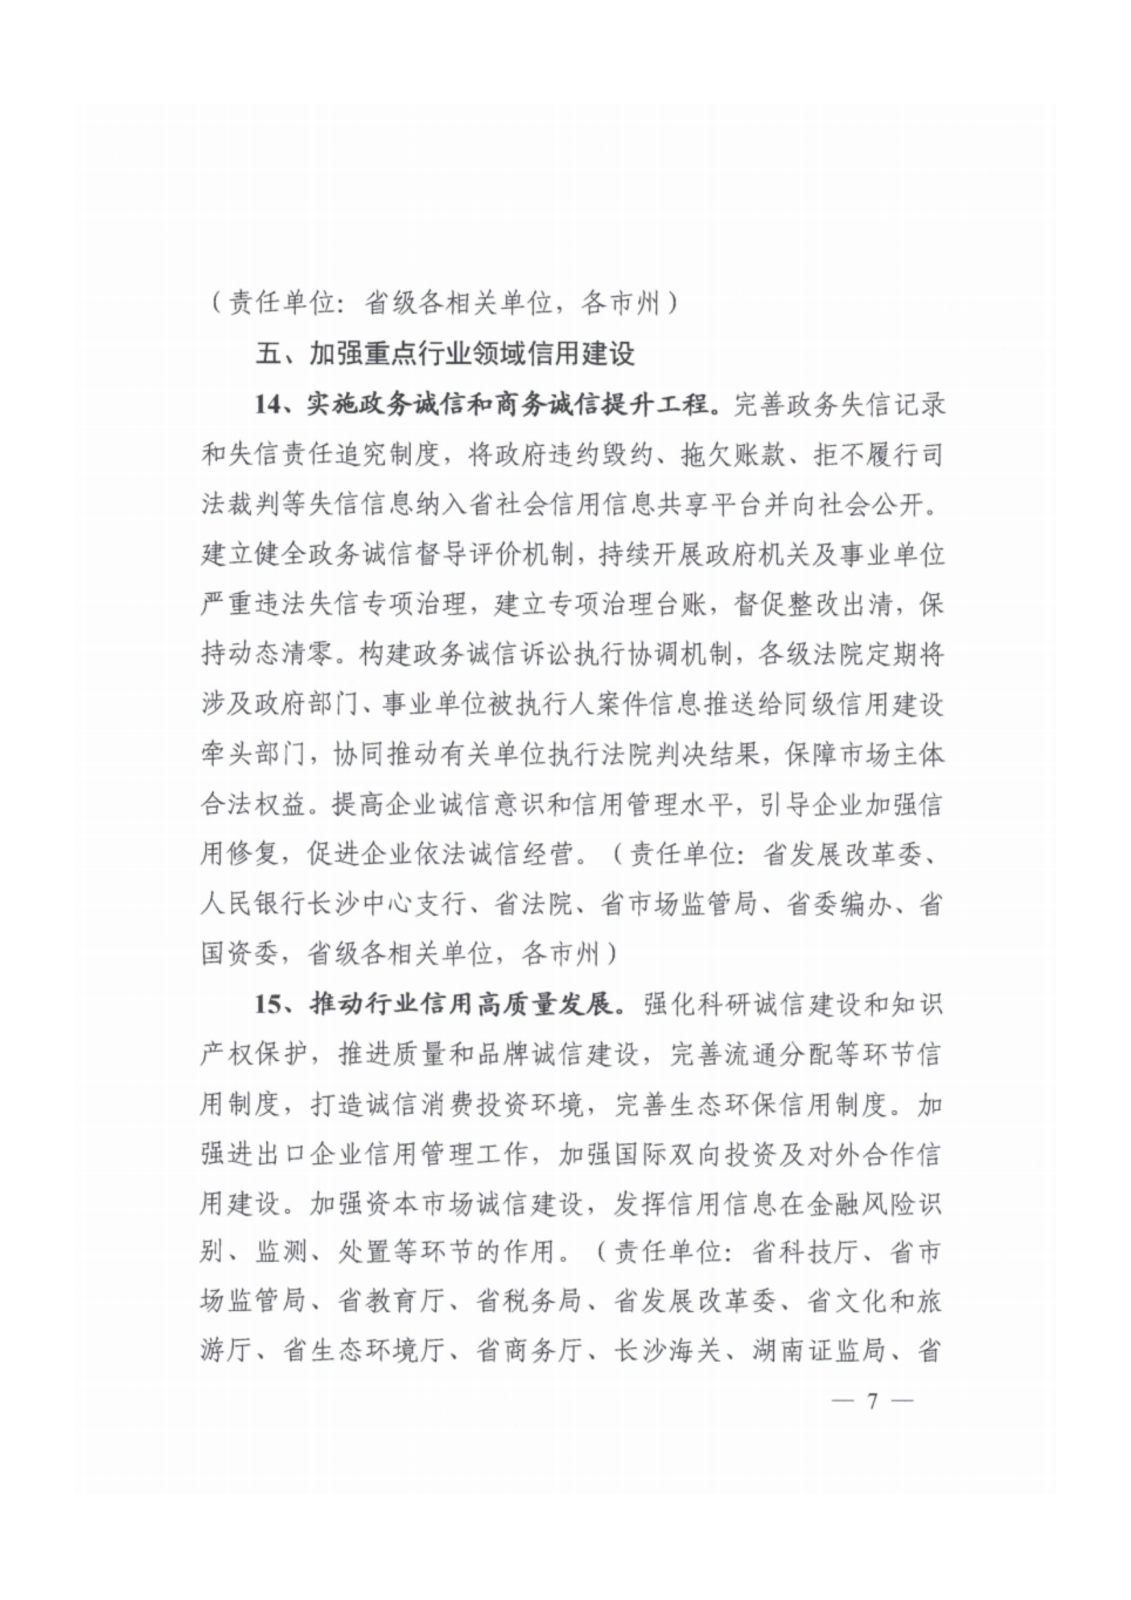 2023年湖南省社会信用体系建设工作要点_06.png